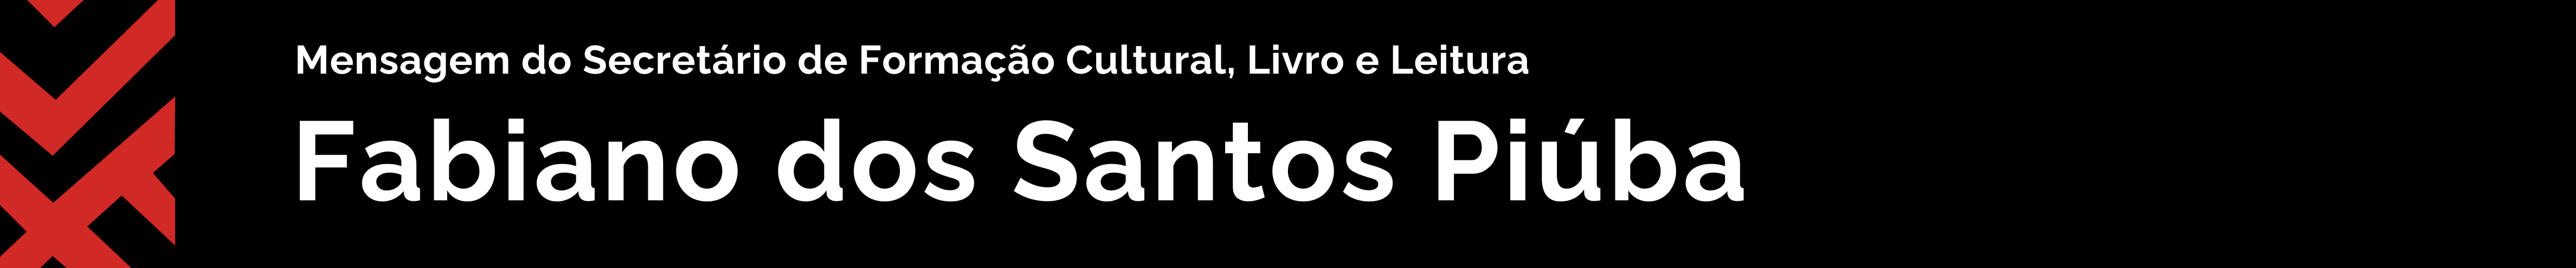 Mensagem de Fabiano dos Santos Piúba Secretário de Formação Cultural, Livro e Leitura do Ministério da Cultura